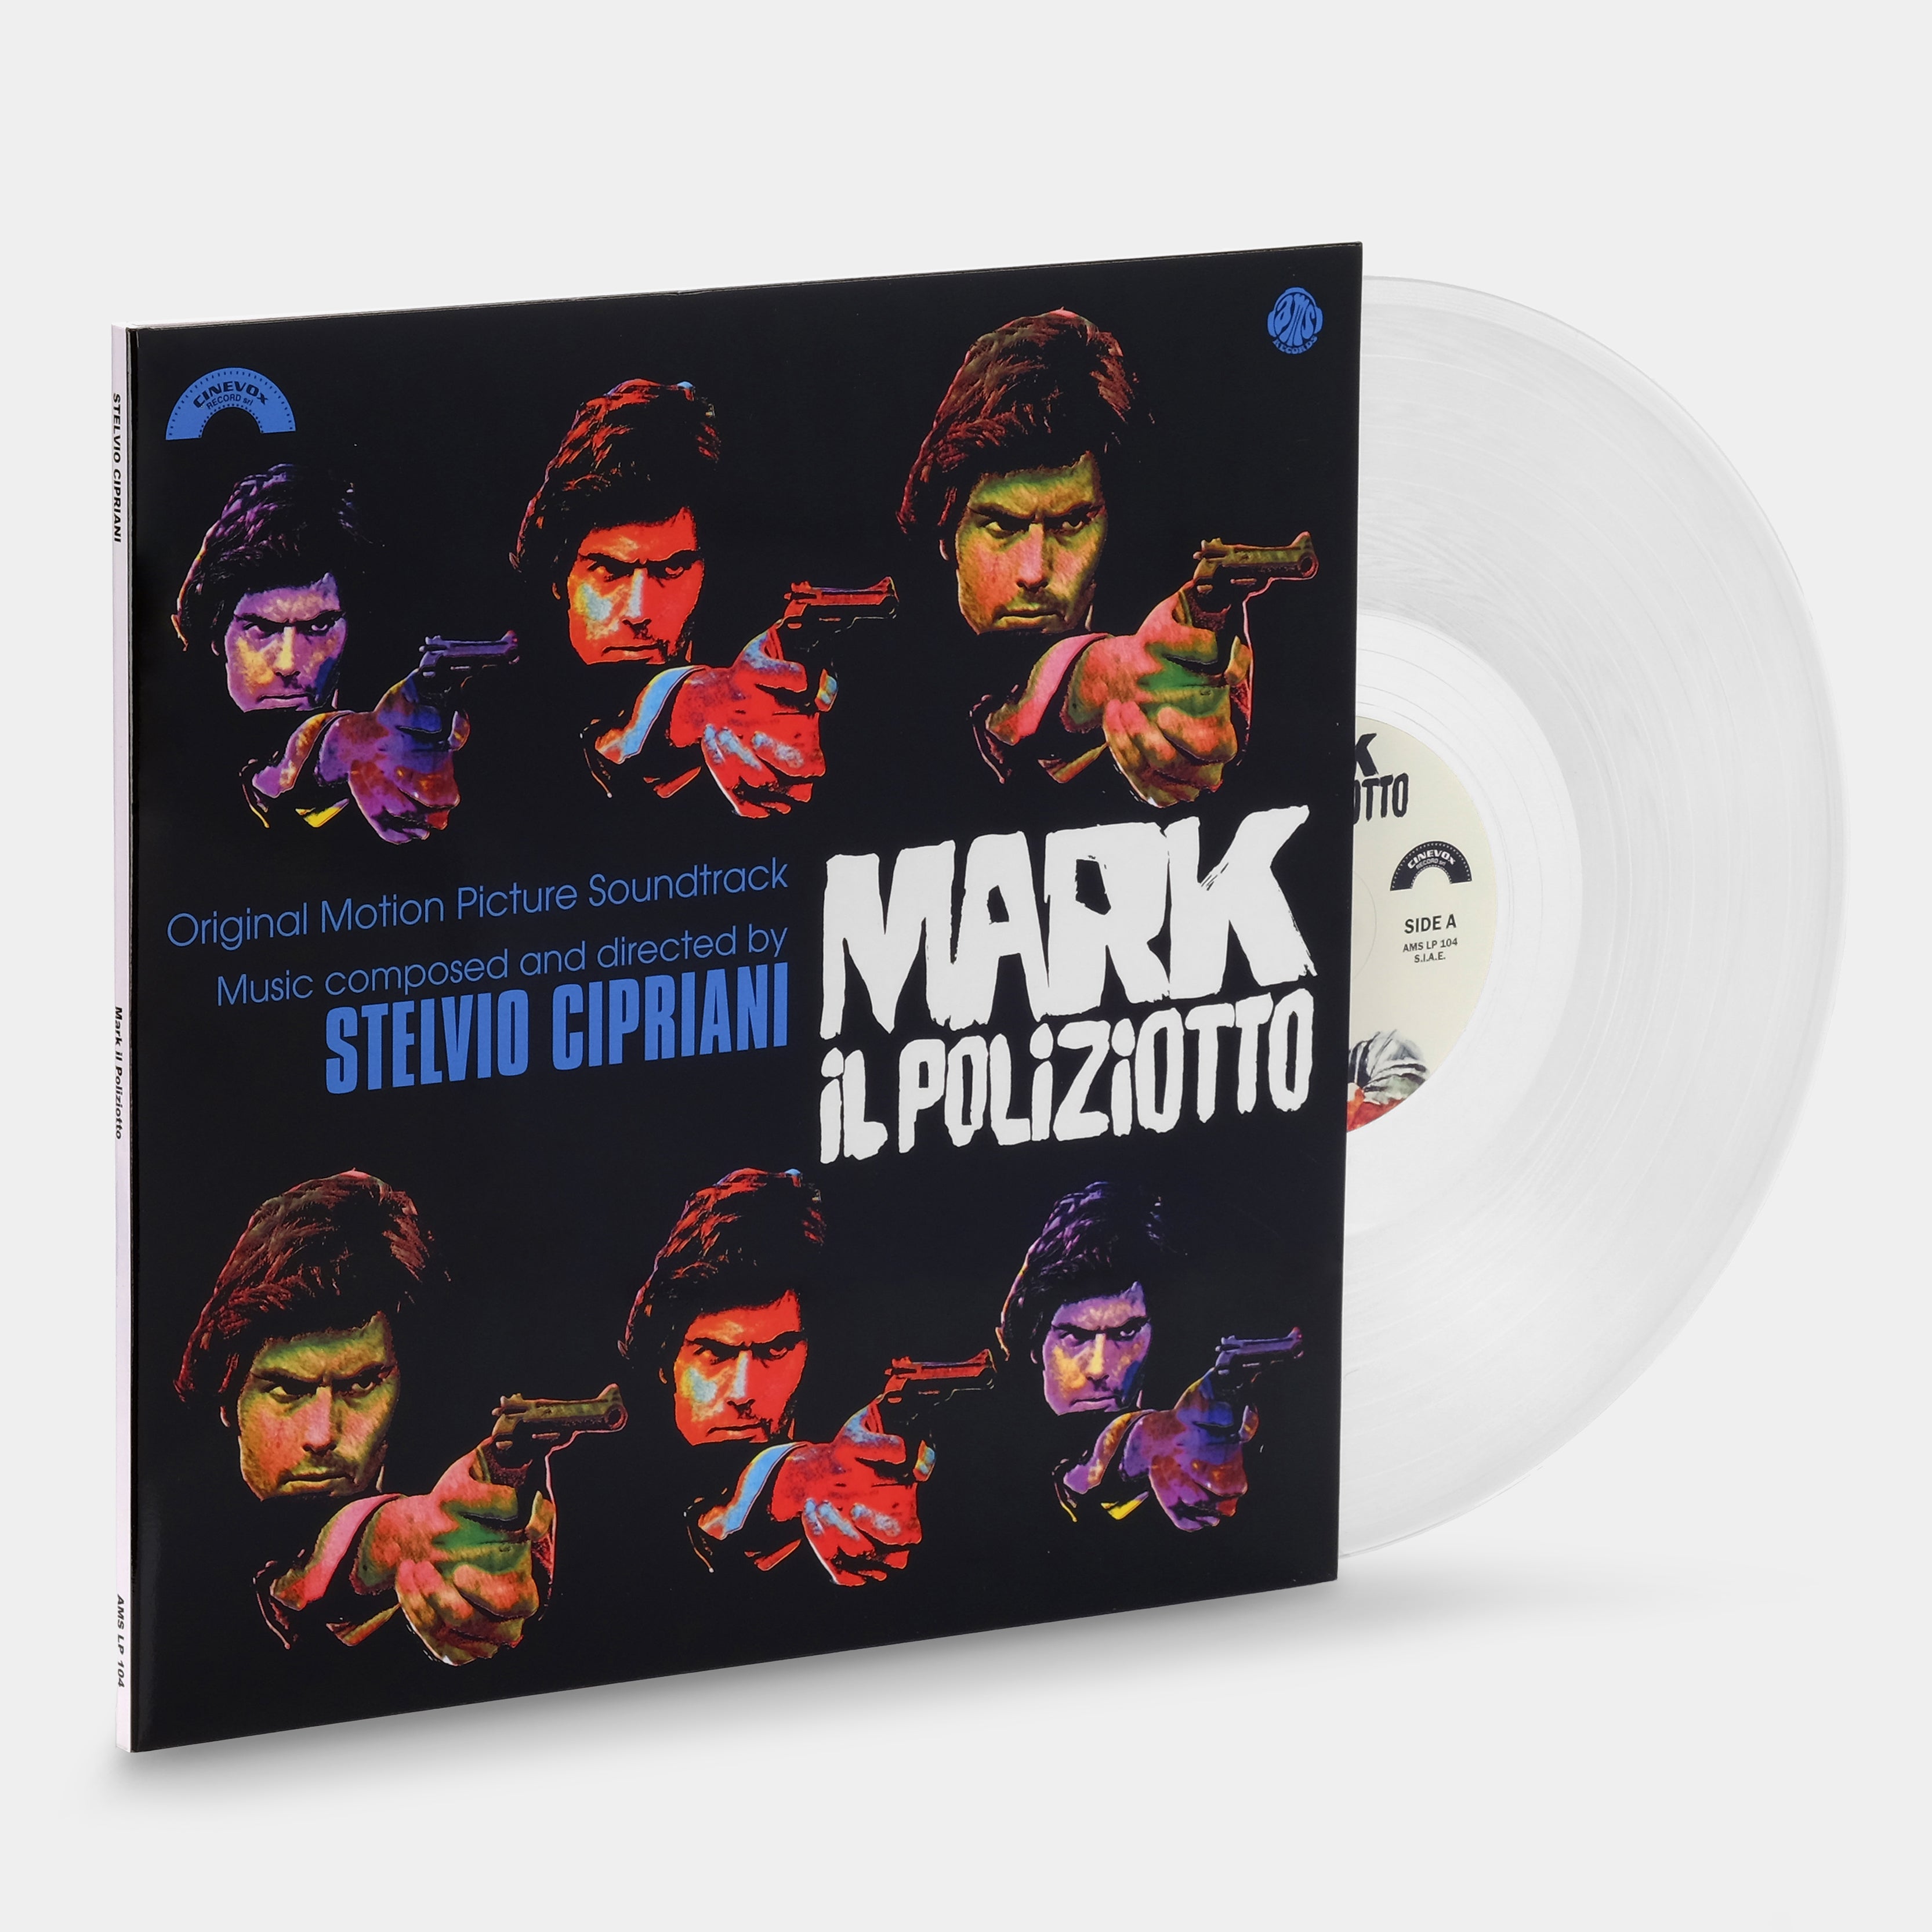 Stelvio Cipriani - Mark Il Poliziotto LP Crystal Clear Vinyl Record